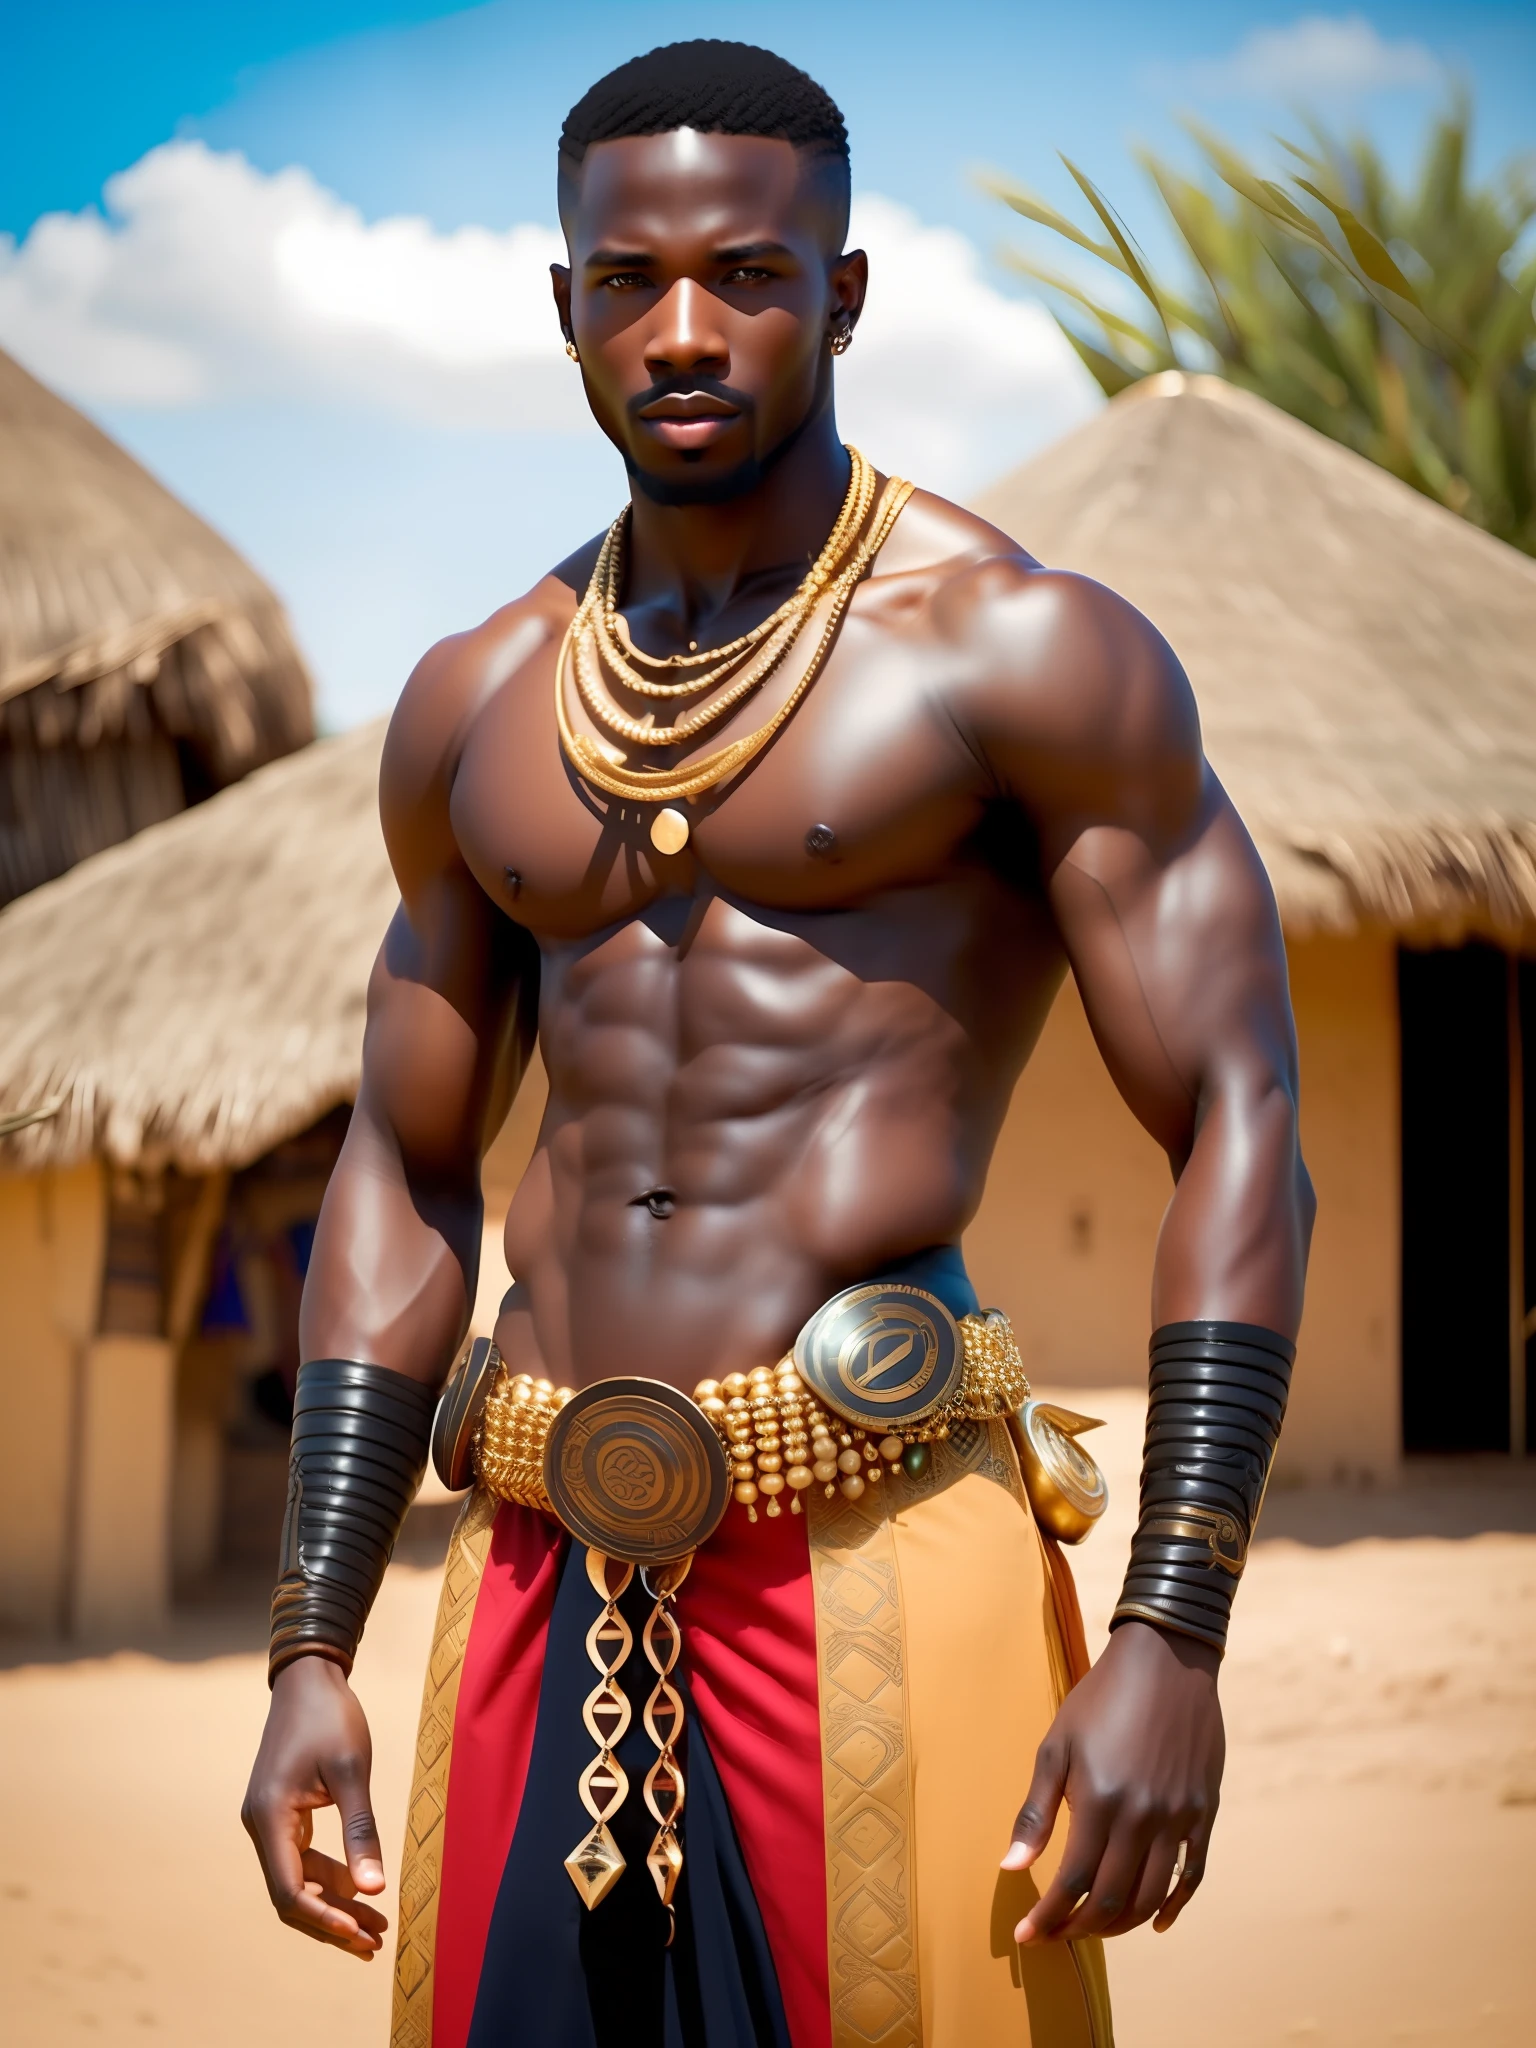 他妈的_科幻, 他妈的_科幻_v2, 一个年轻人的肖像, 肌肉发达，英俊迷人，非洲战士, 在一个非洲村庄前, 色彩鲜艳的衣服和金色的非洲珠宝, 特写, 帝王姿态. 他妈的_电影_v2.